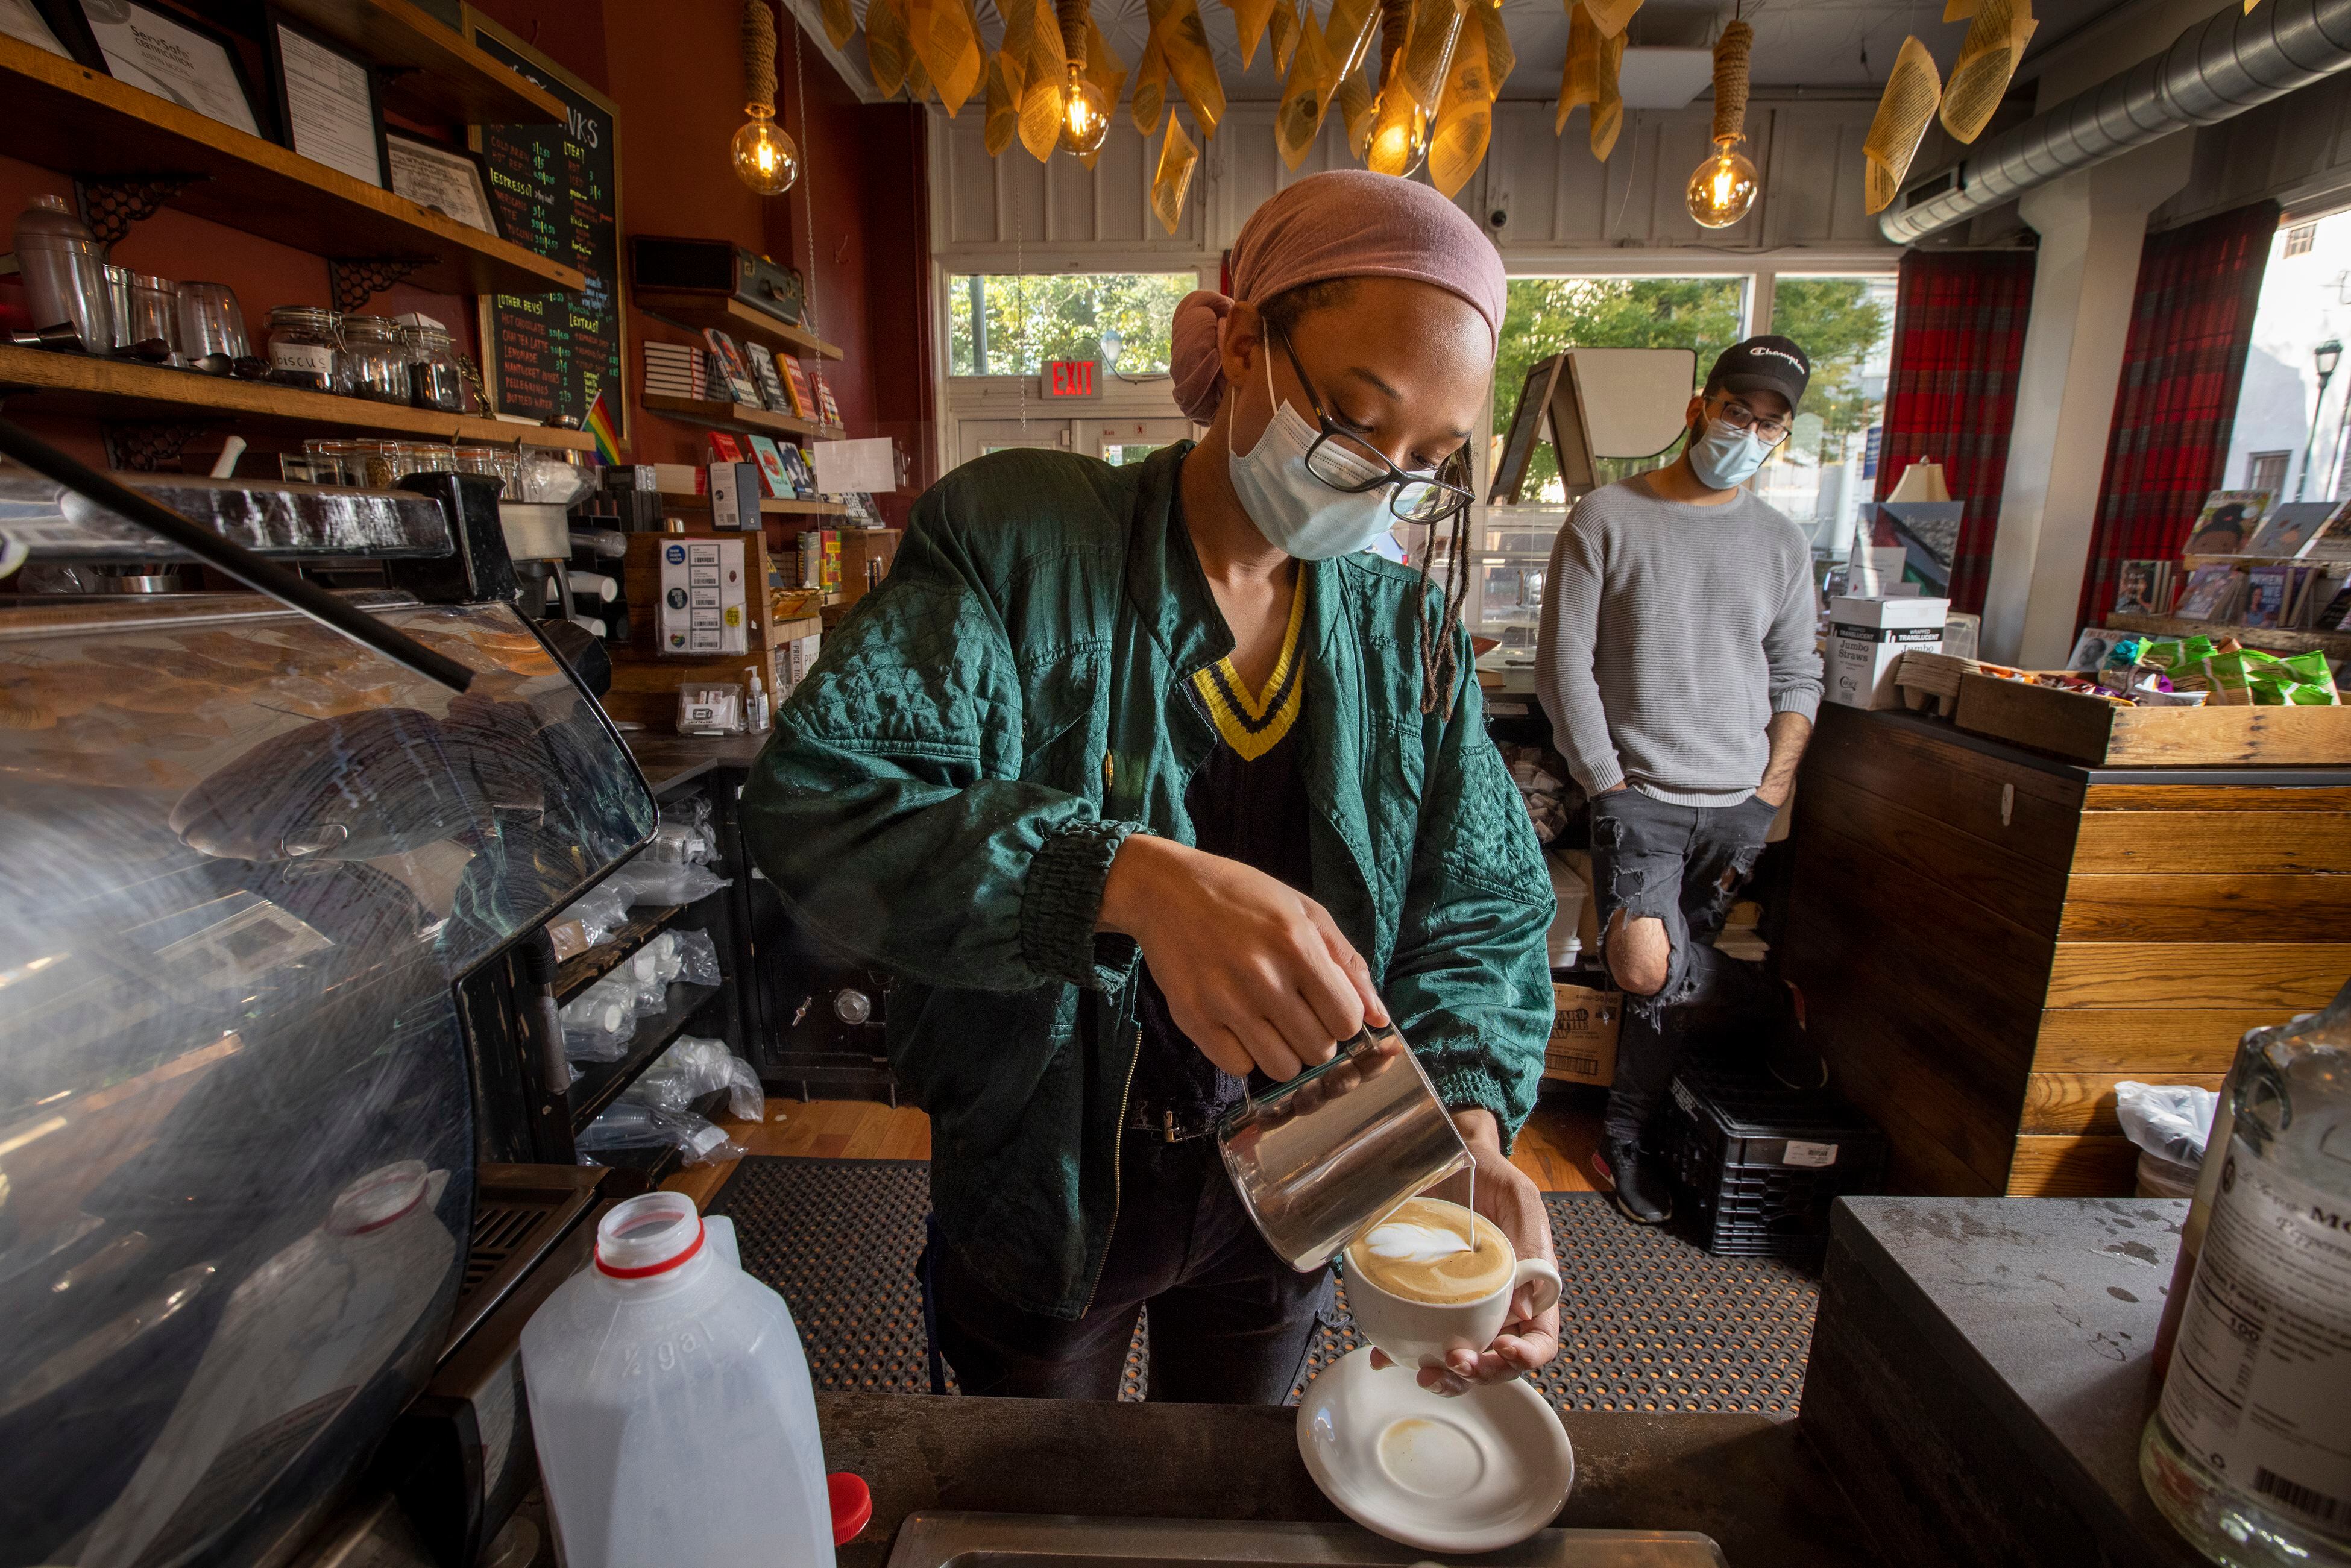 The Best Coffee Shops in Philadelphia – UNATION